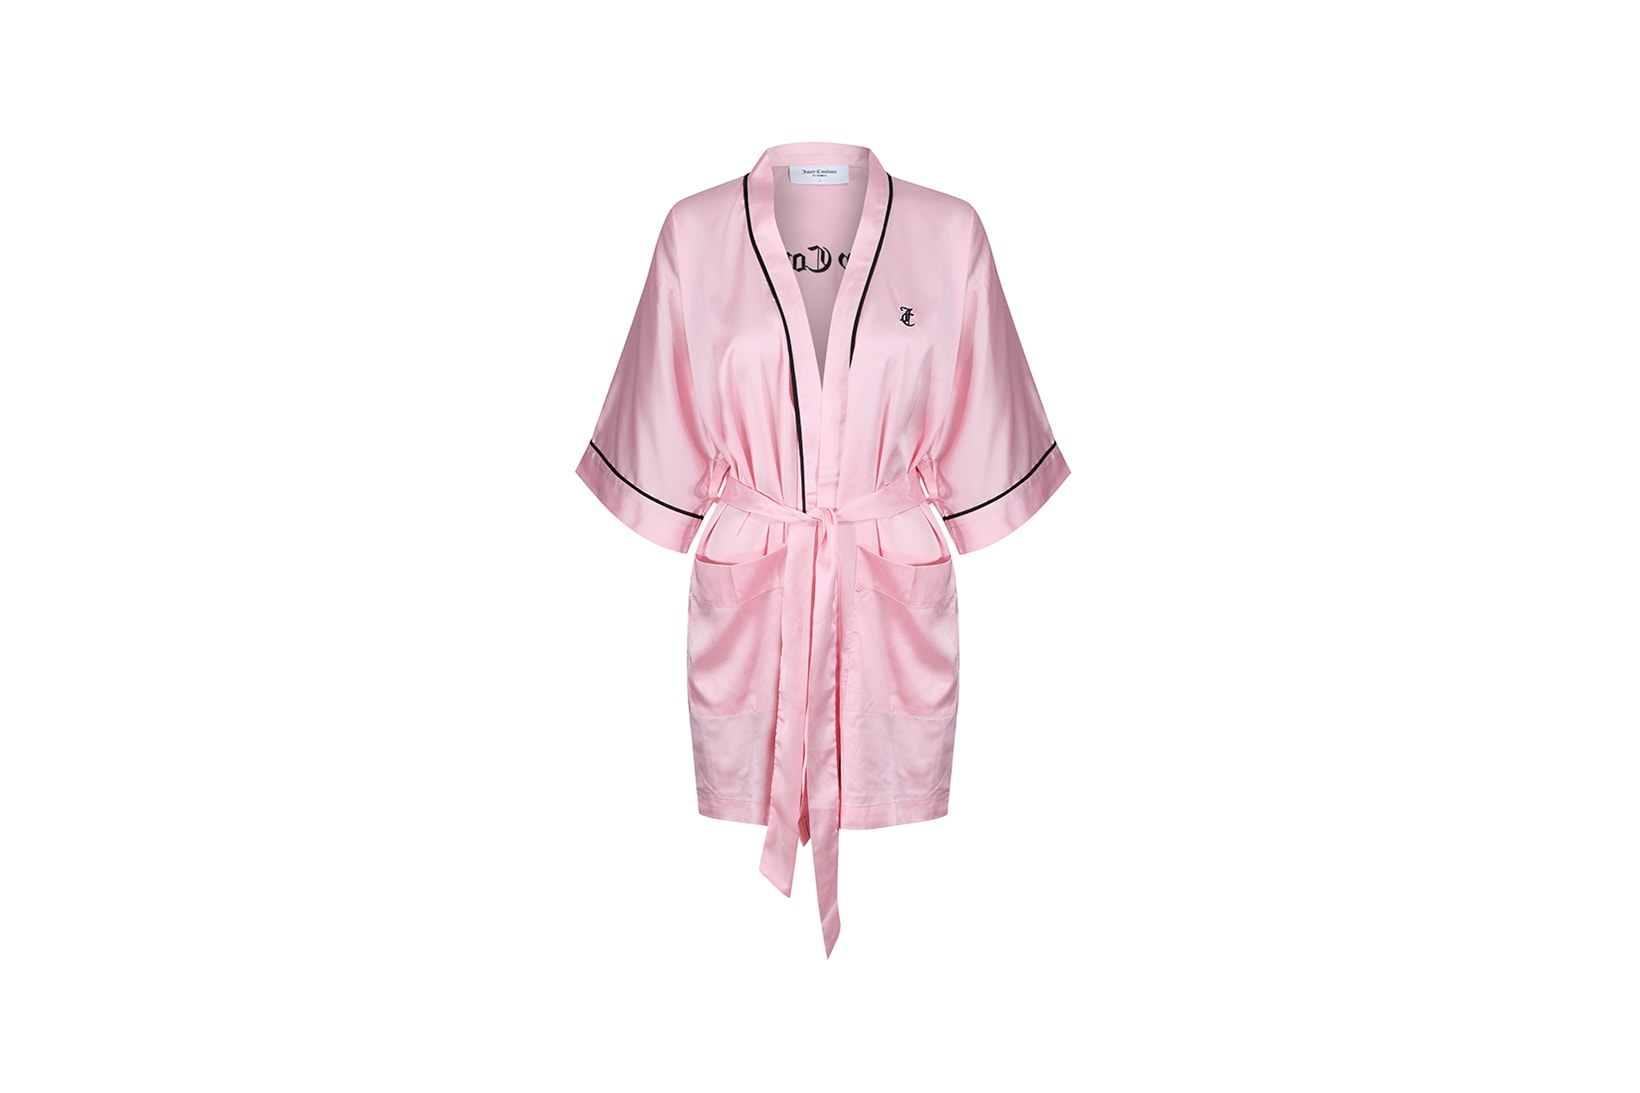 Juicy Couture Sleepwear & robes